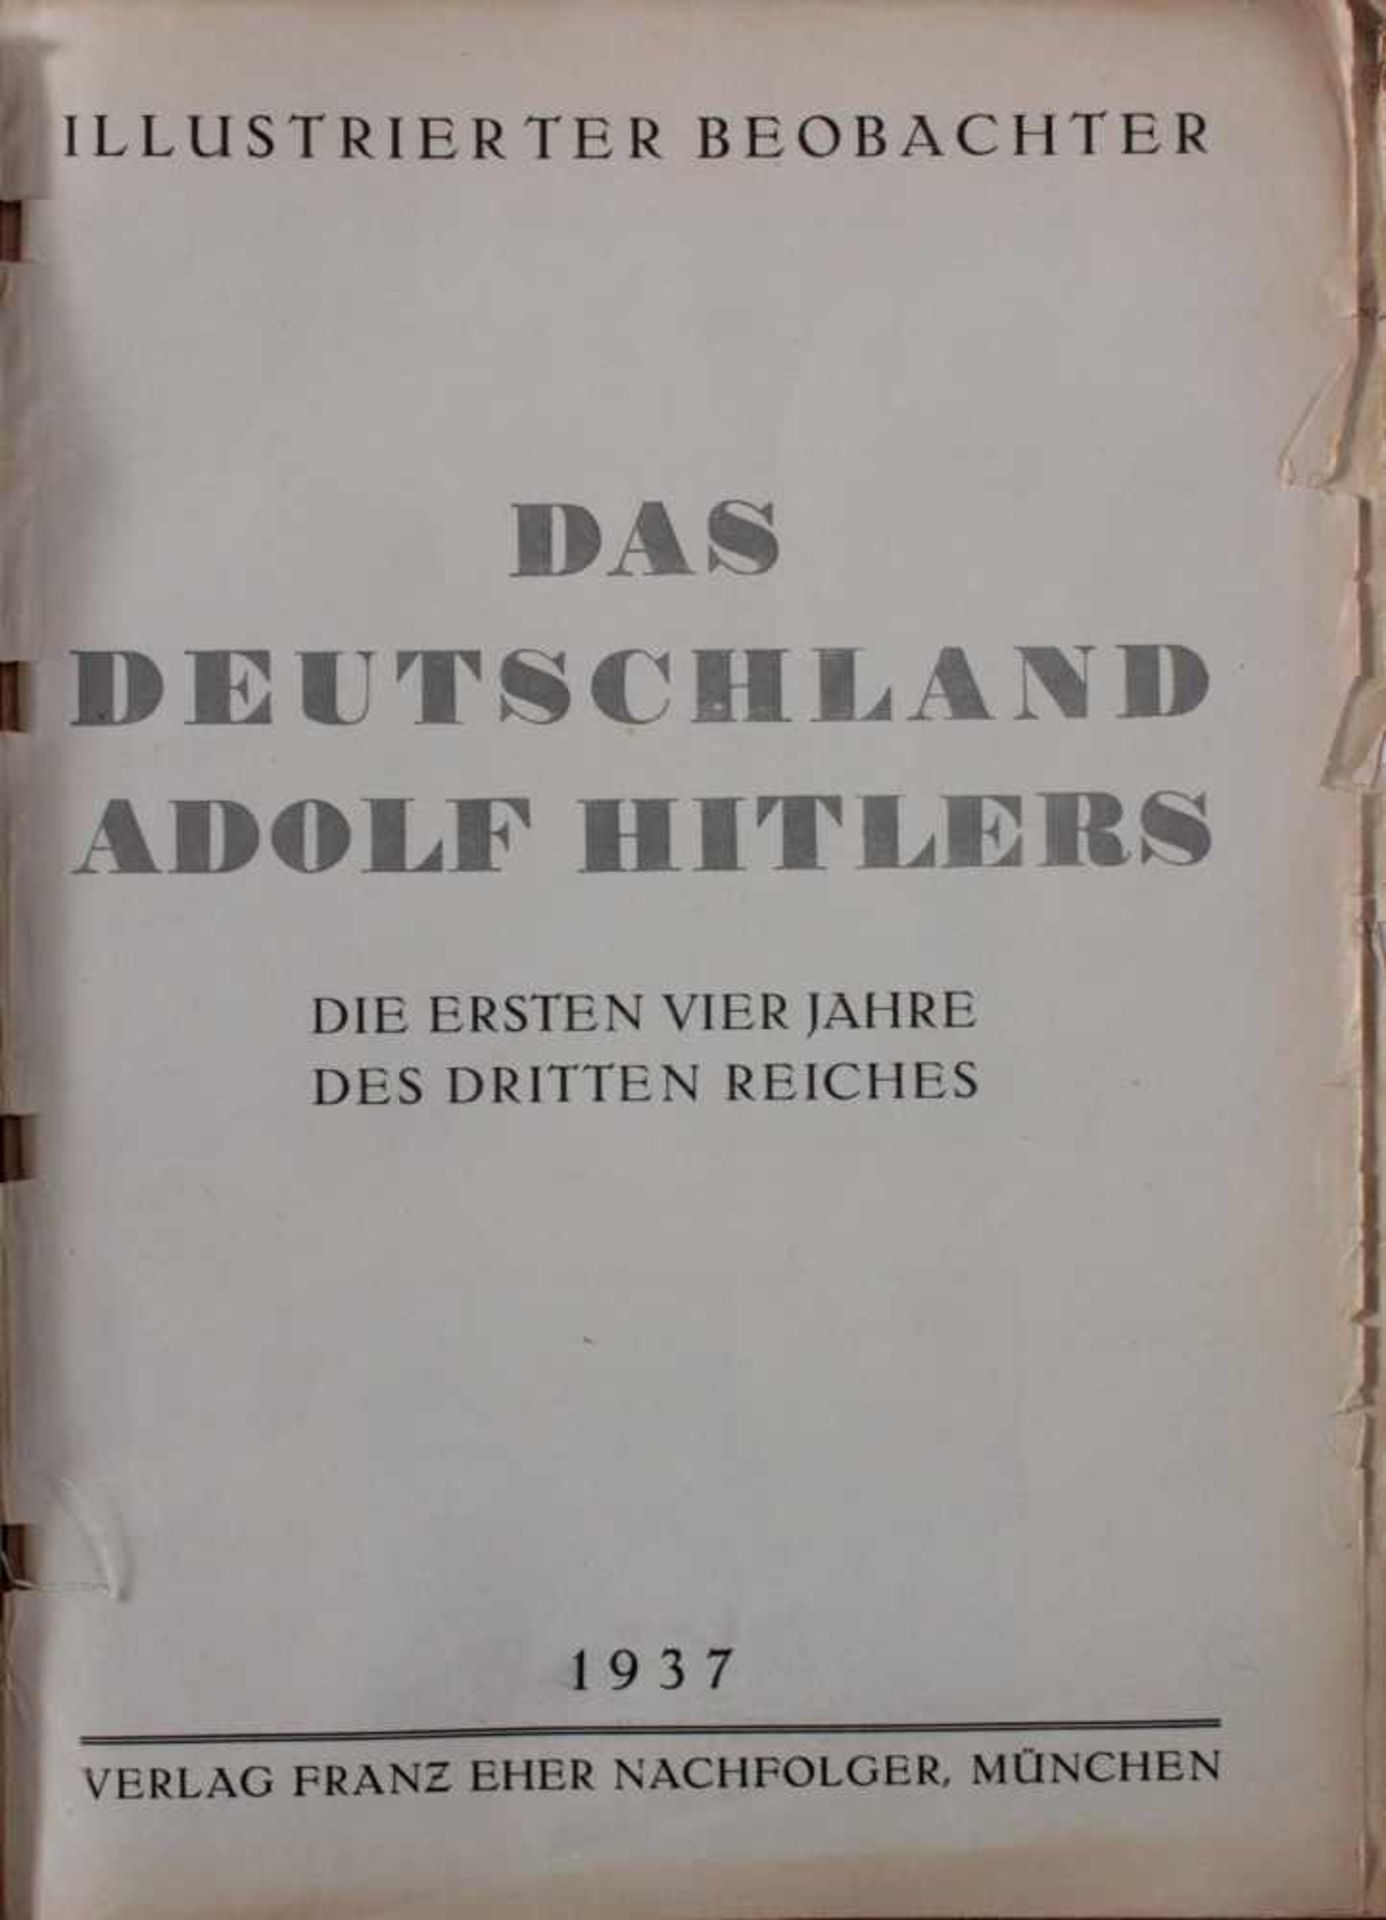 Illustrierter Beobachter, München 1937Das Deutschland Adolf Hitlers. Die ersten vierzig Jahre des - Image 2 of 4